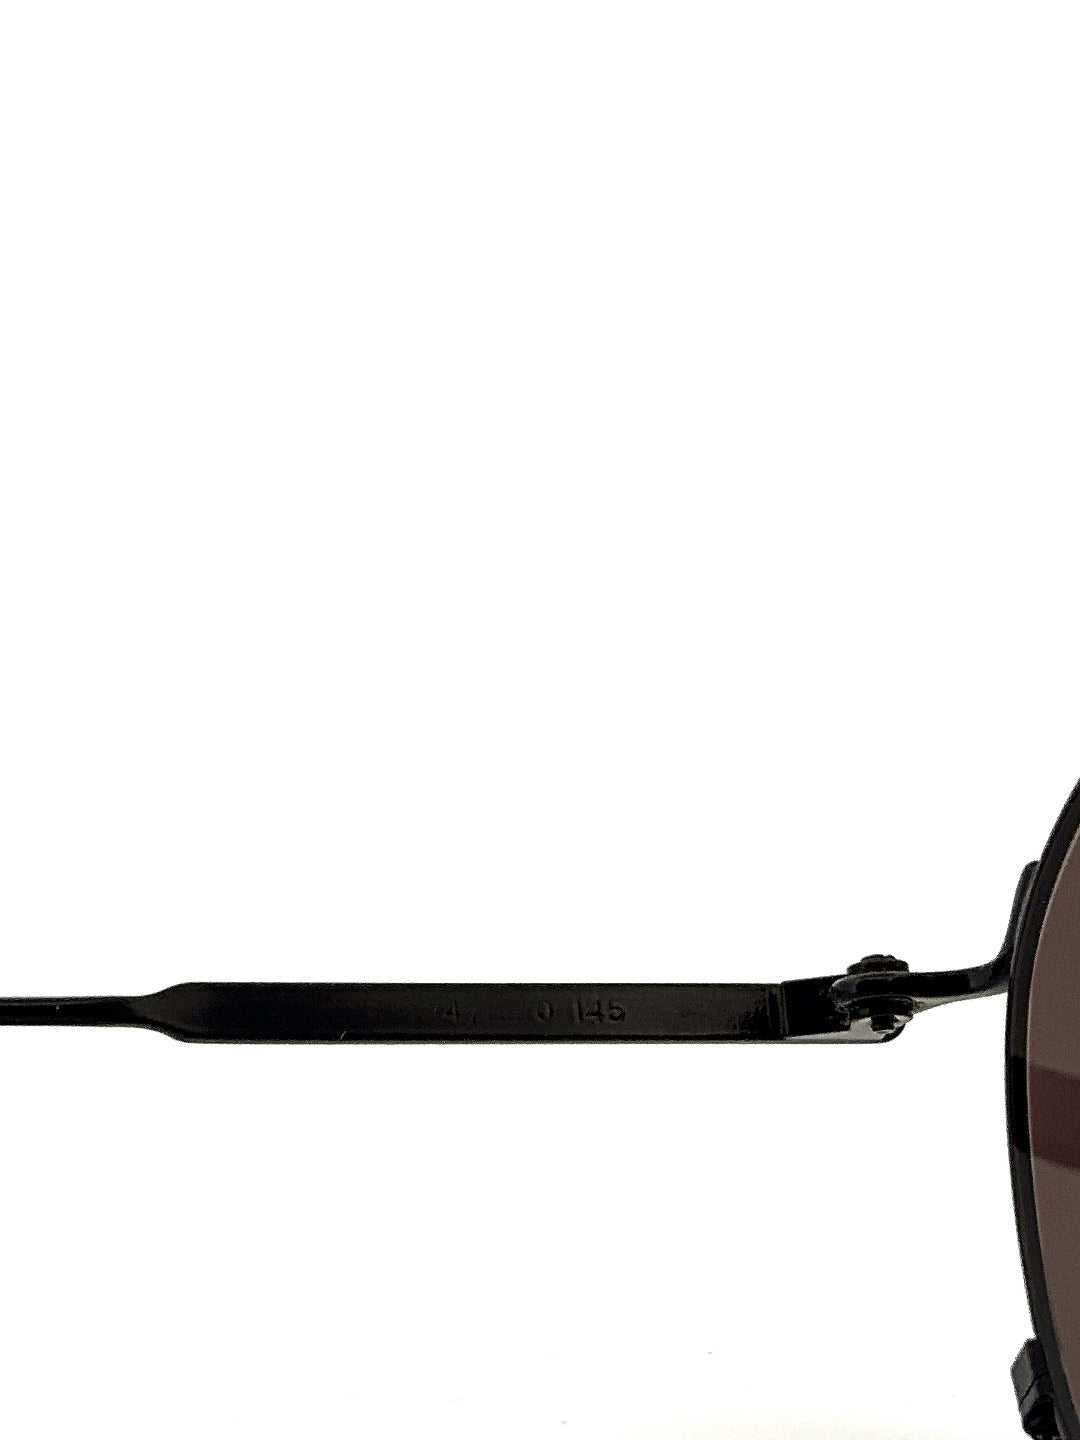 Vintage 90s Jean Paul Gaultier Sunglasses 55-0171 - Medium - JPG Made in Japan